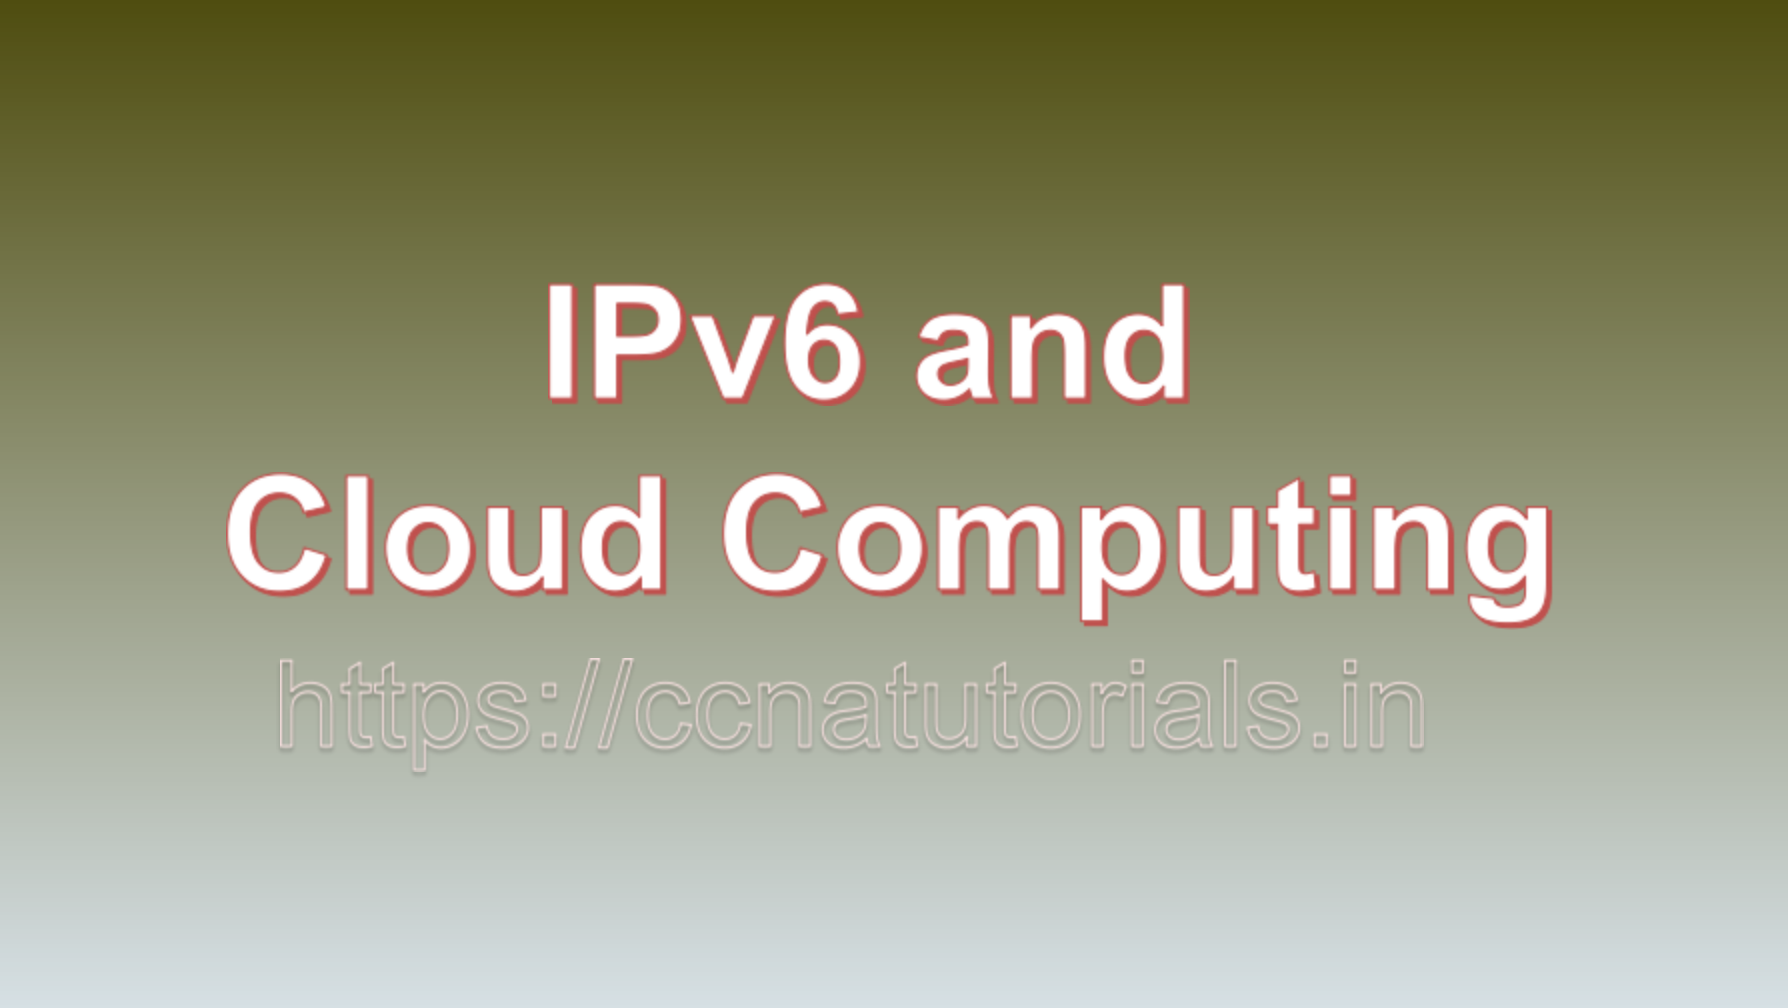 IPv6 and Cloud Computing, ccna, CCNA TUTORIALS